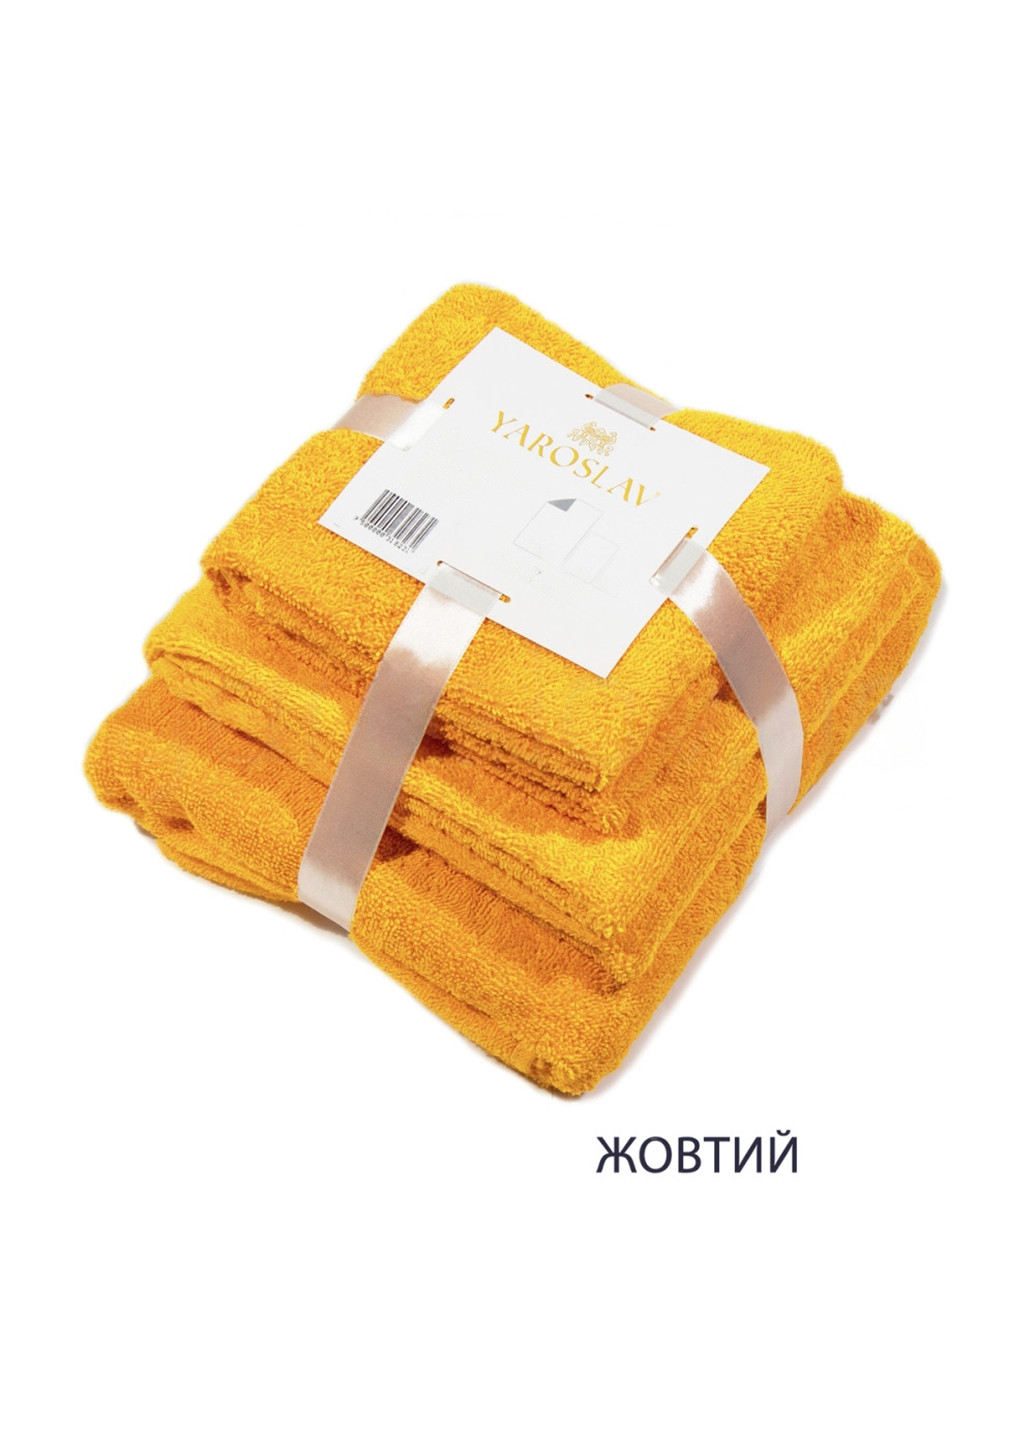 Ярослав набор полотенец яр-400 3 шт. однотонный желтый производство - Украина